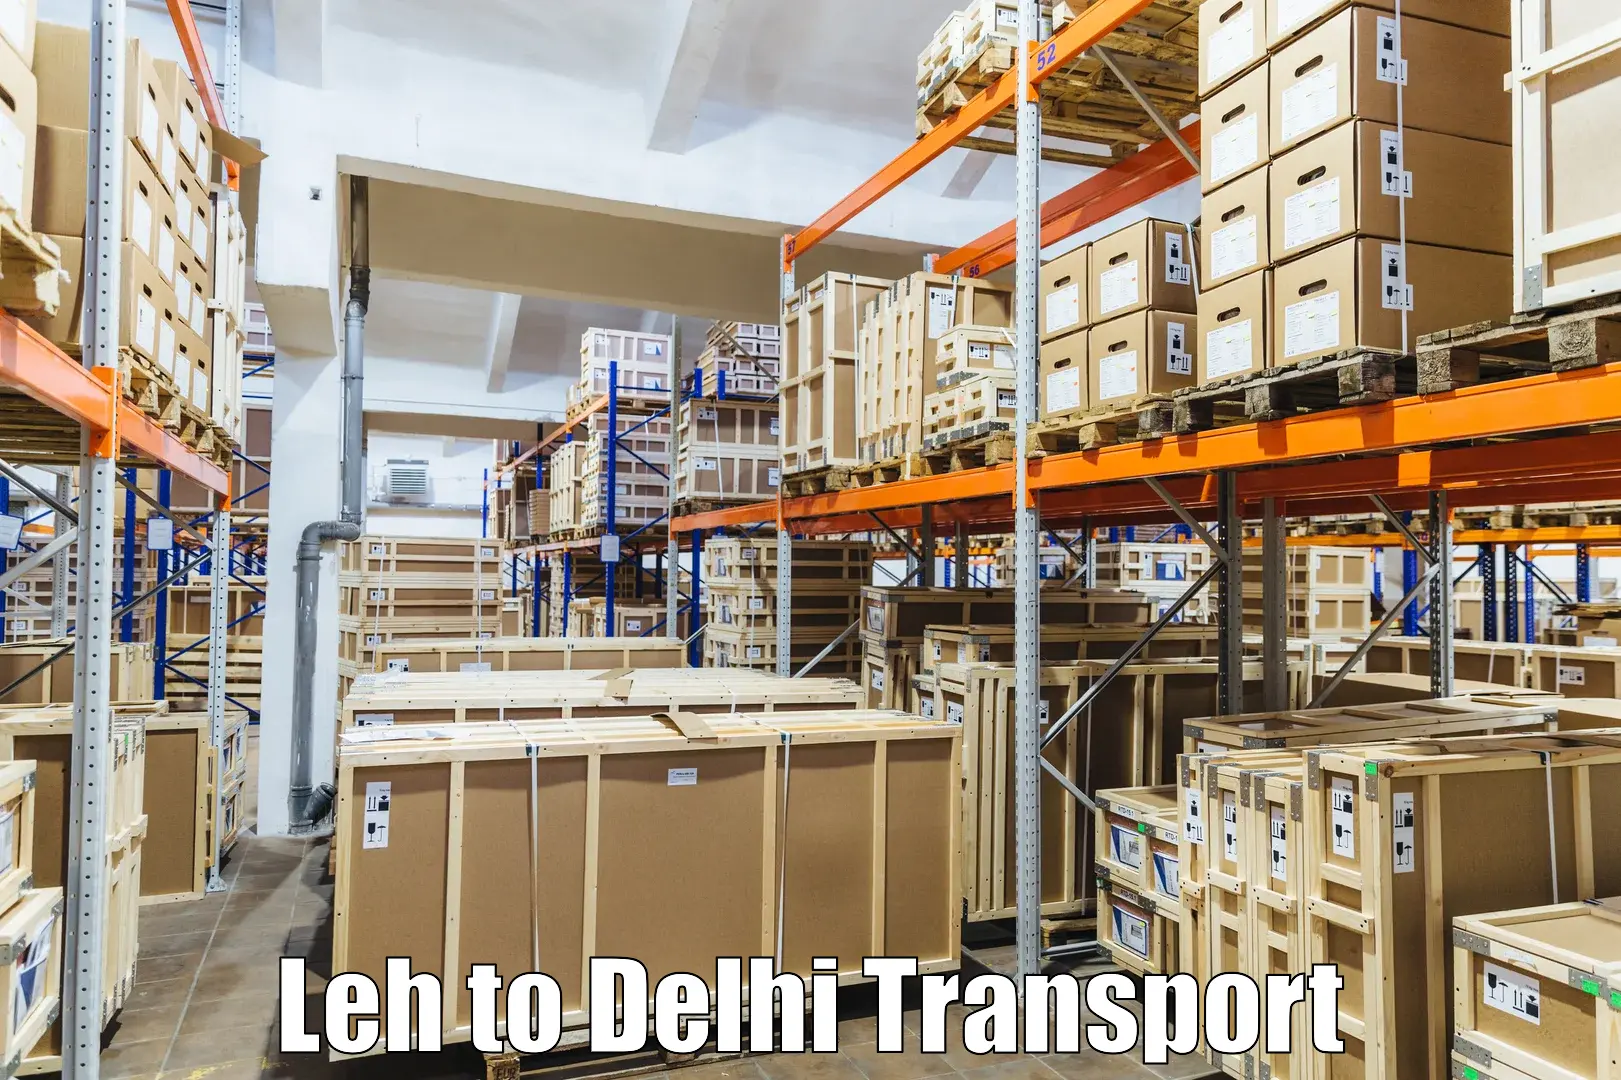 Vehicle courier services Leh to Jamia Millia Islamia New Delhi